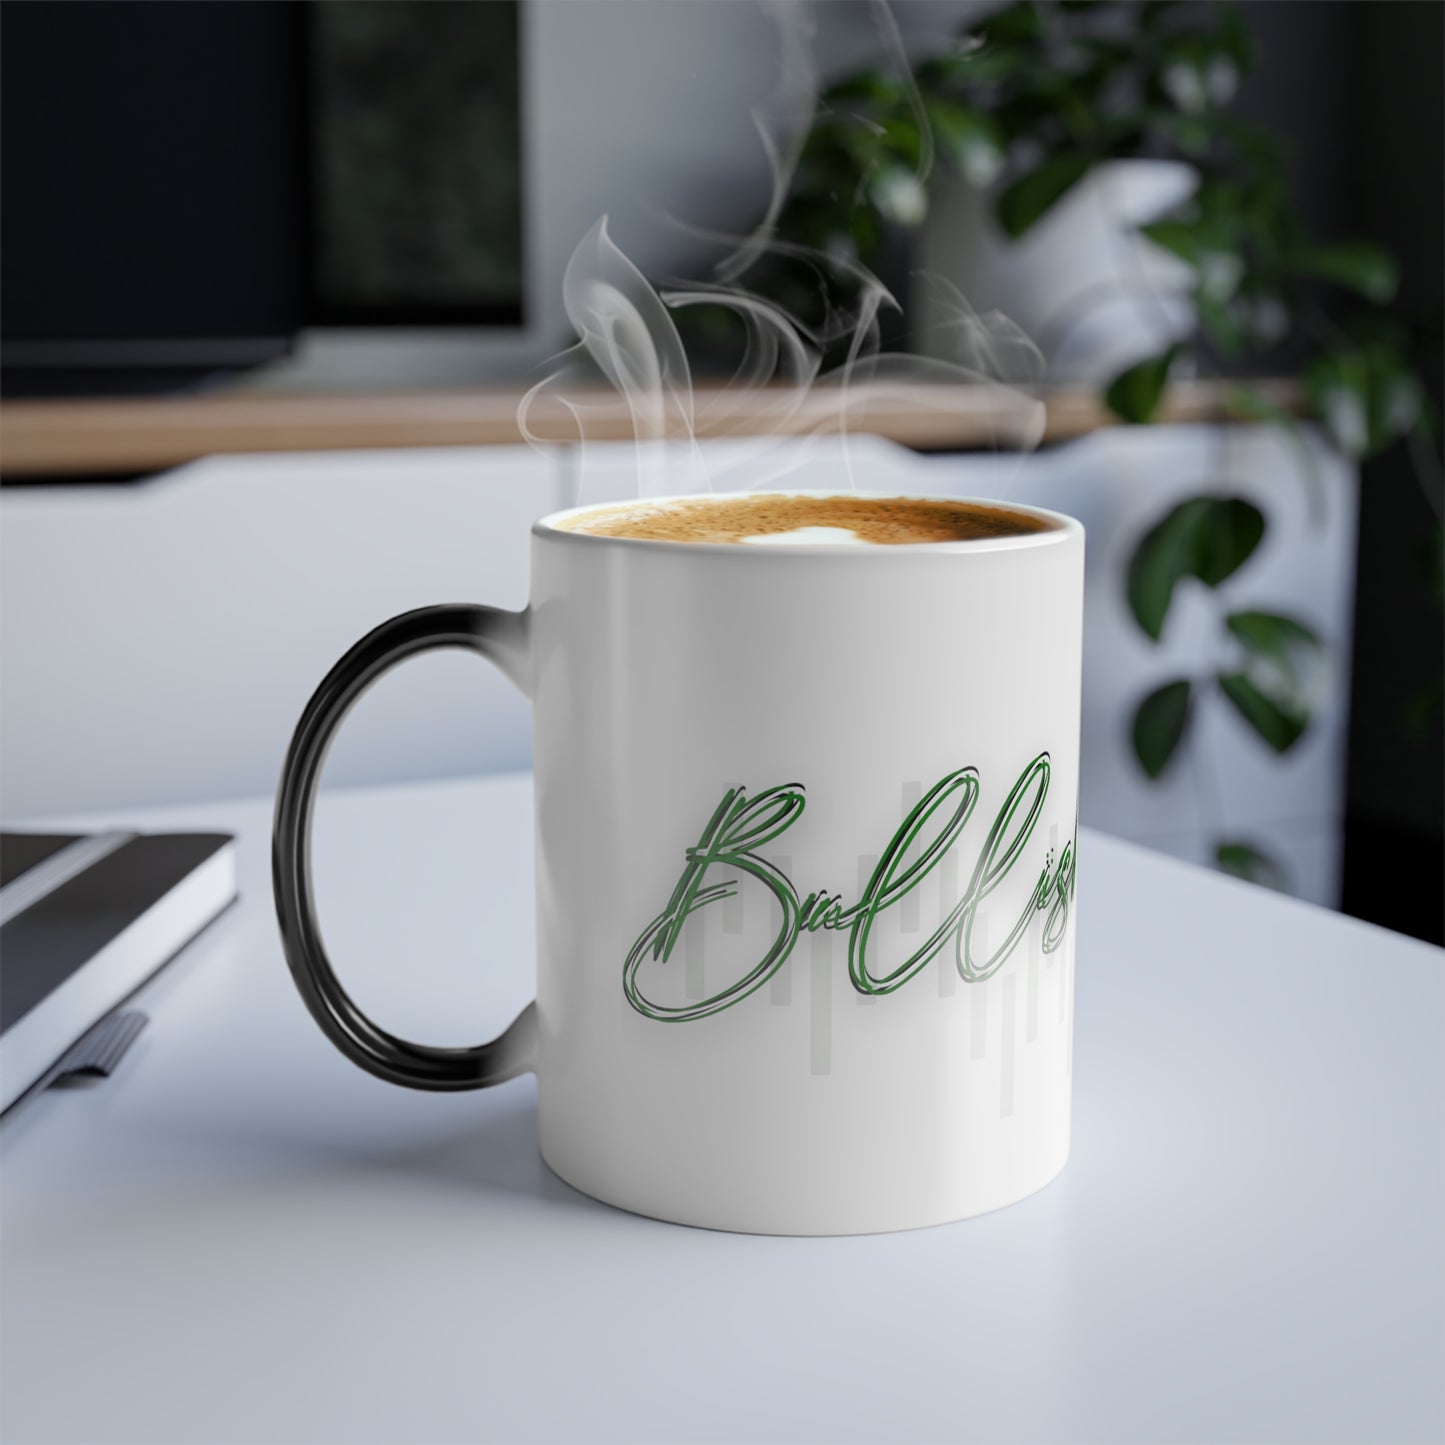 Fuel Your Style: Bullish on Style Coffee Mug Color Morphing Mug, 11oz